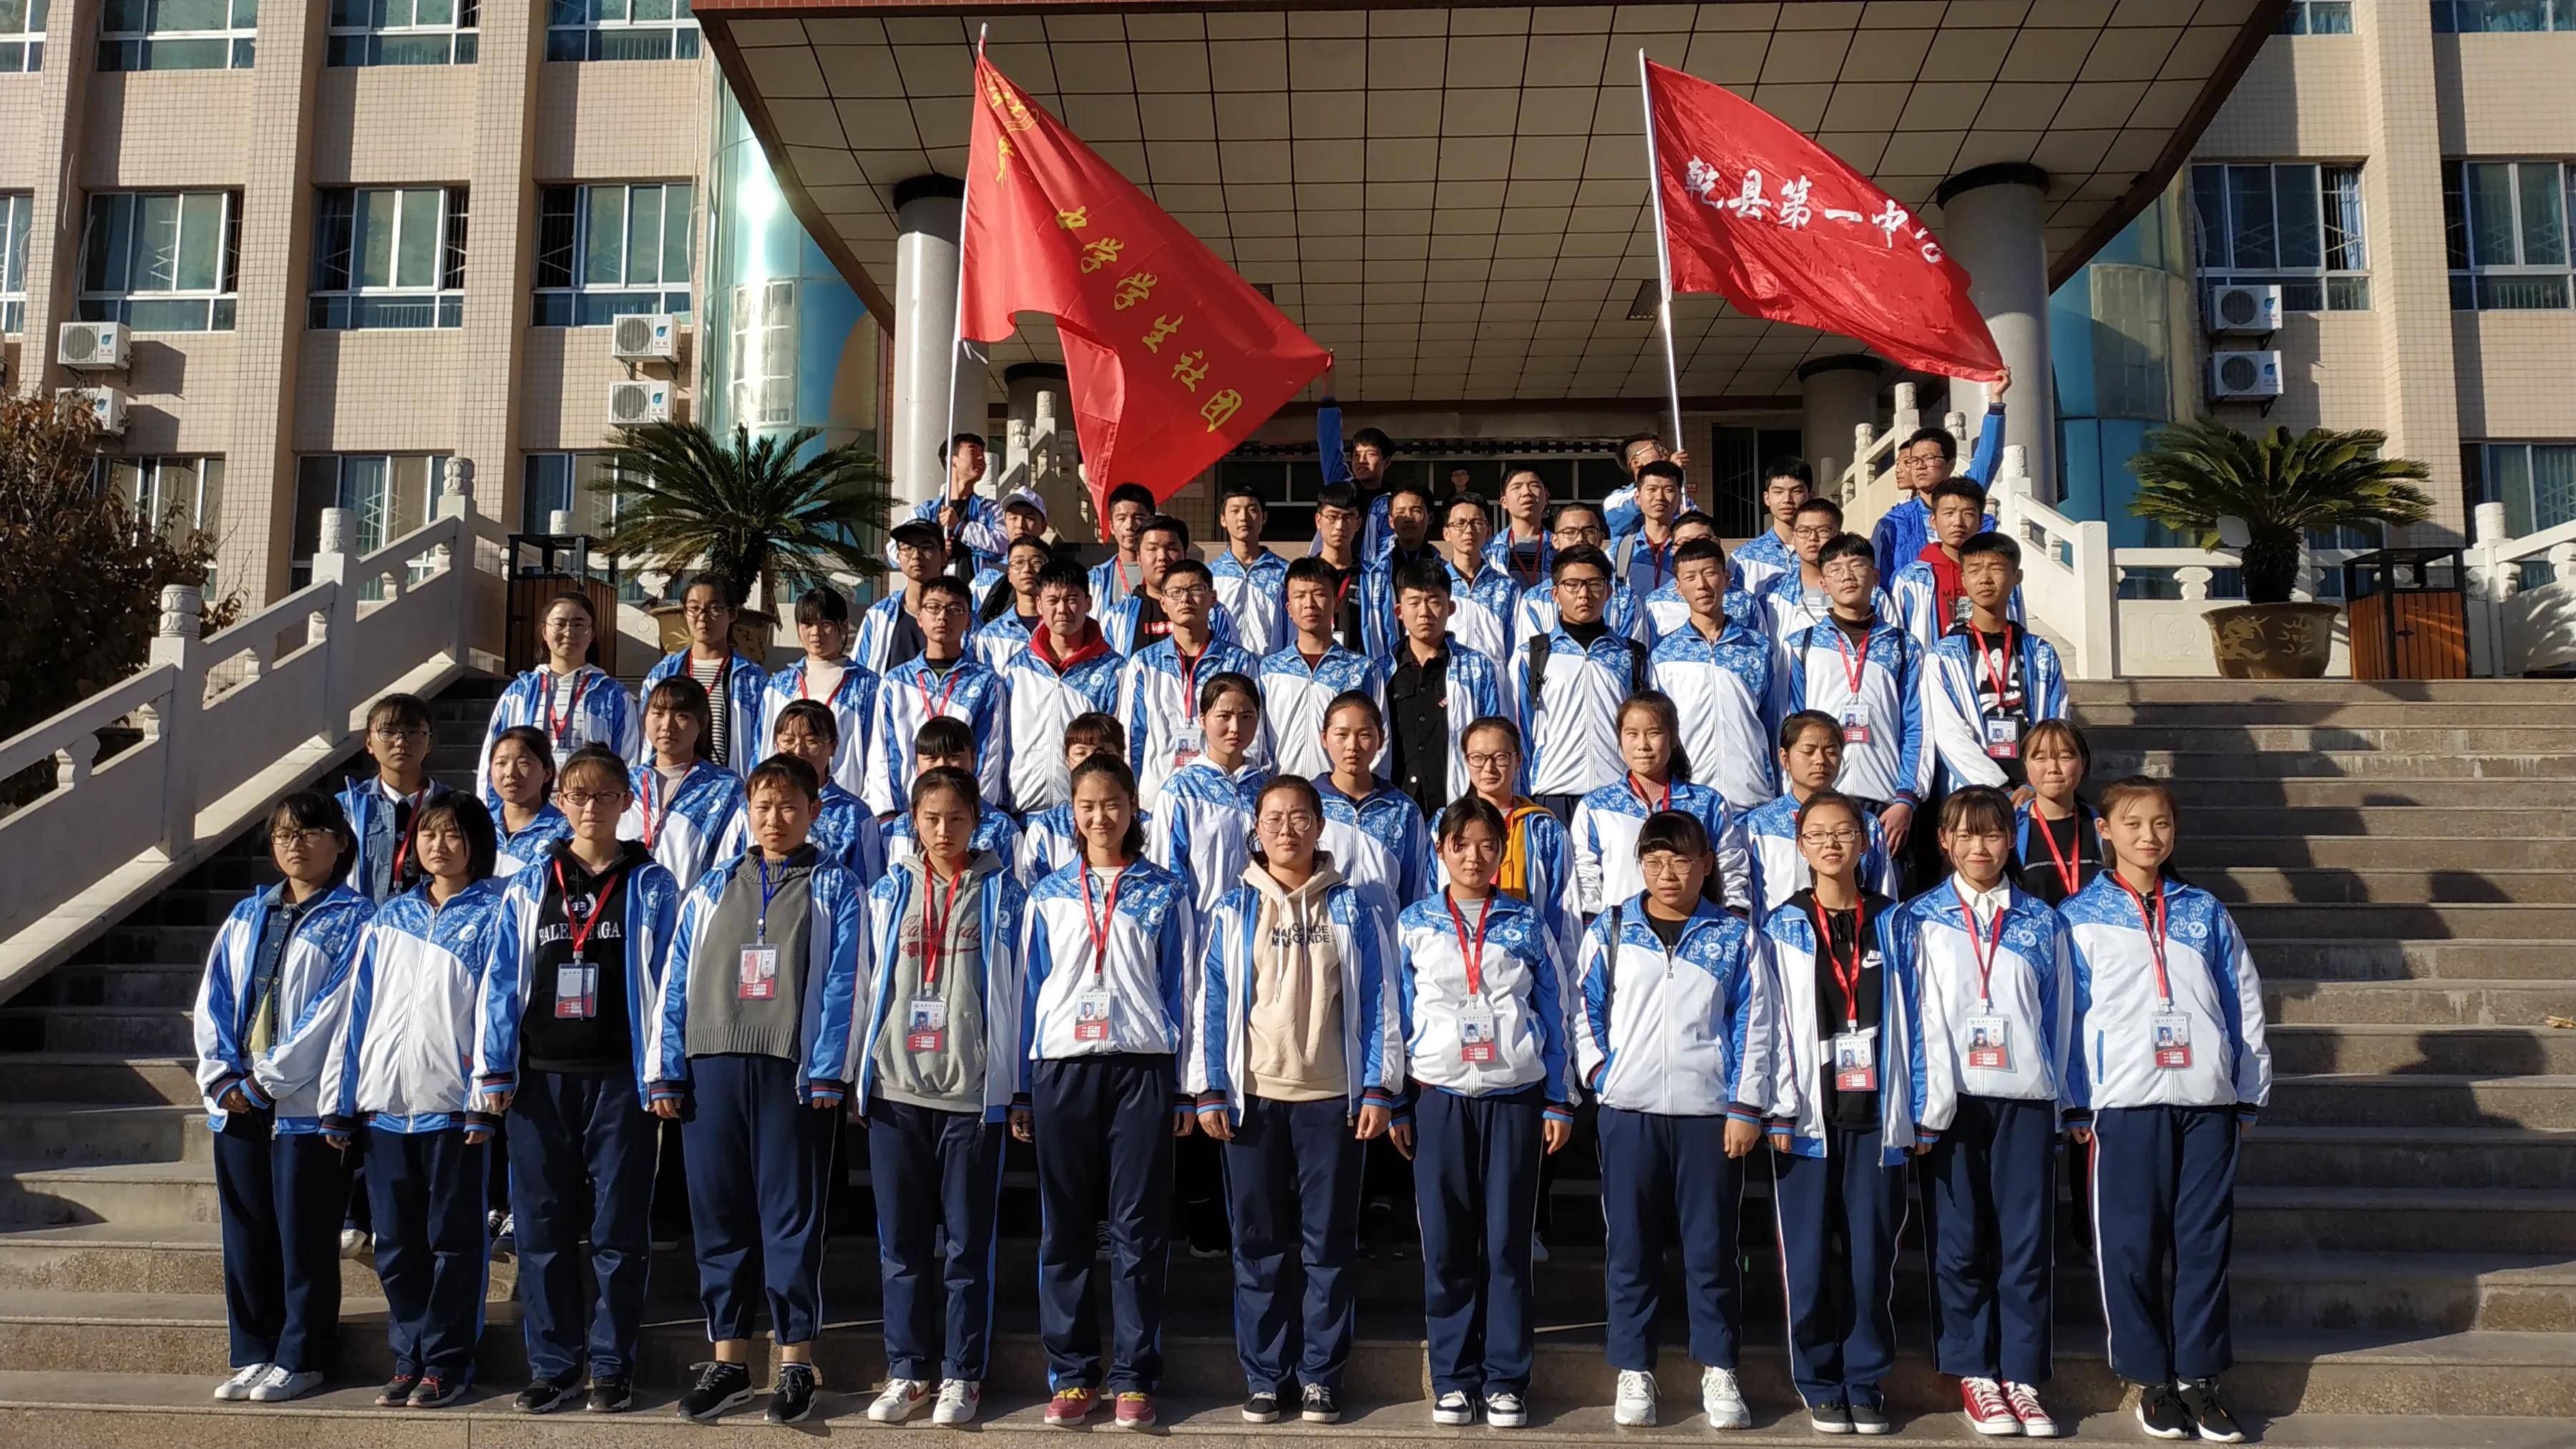 原创陕西省乾县第一中学:社团活动为学生折射出彩色光线